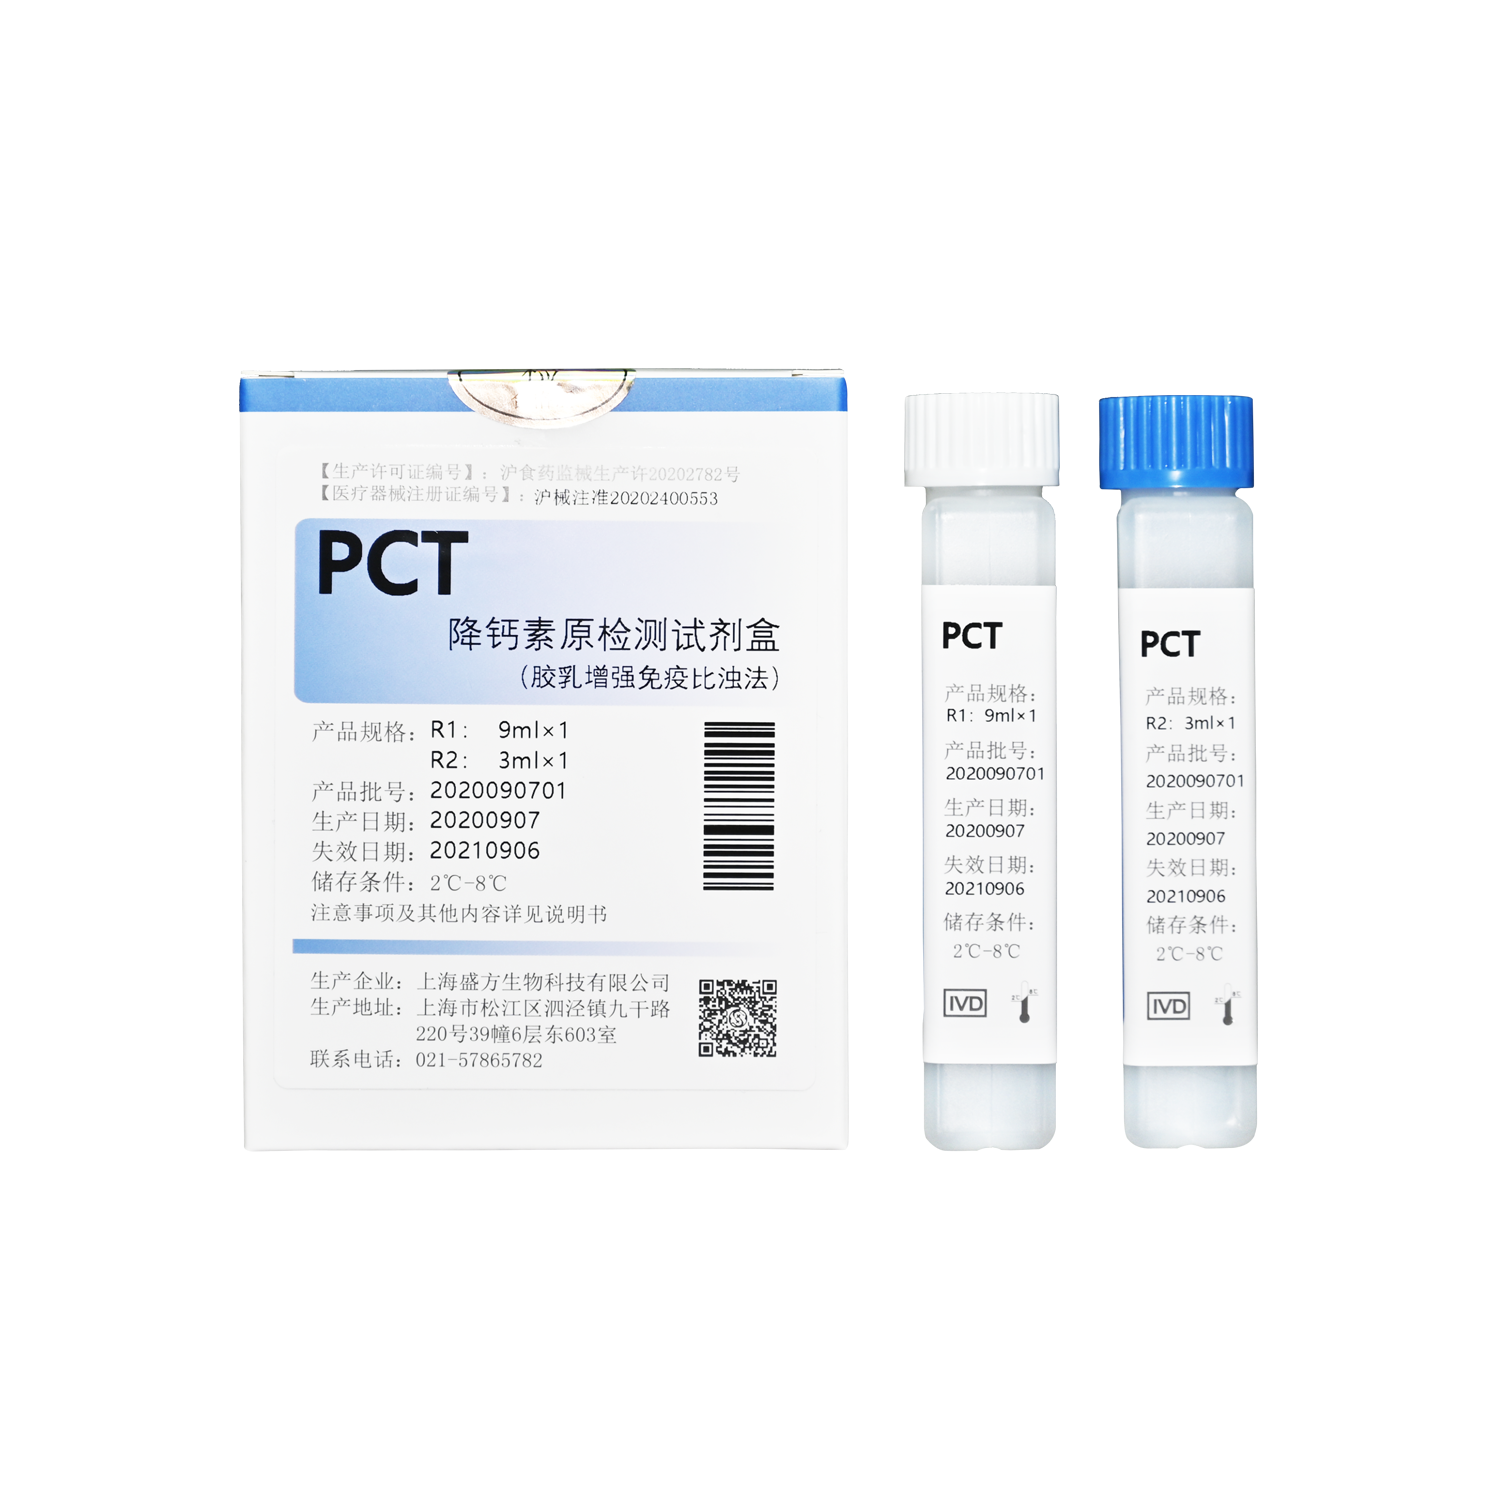 PCT 降钙素原检测试剂盒（胶乳增强免疫比浊法）